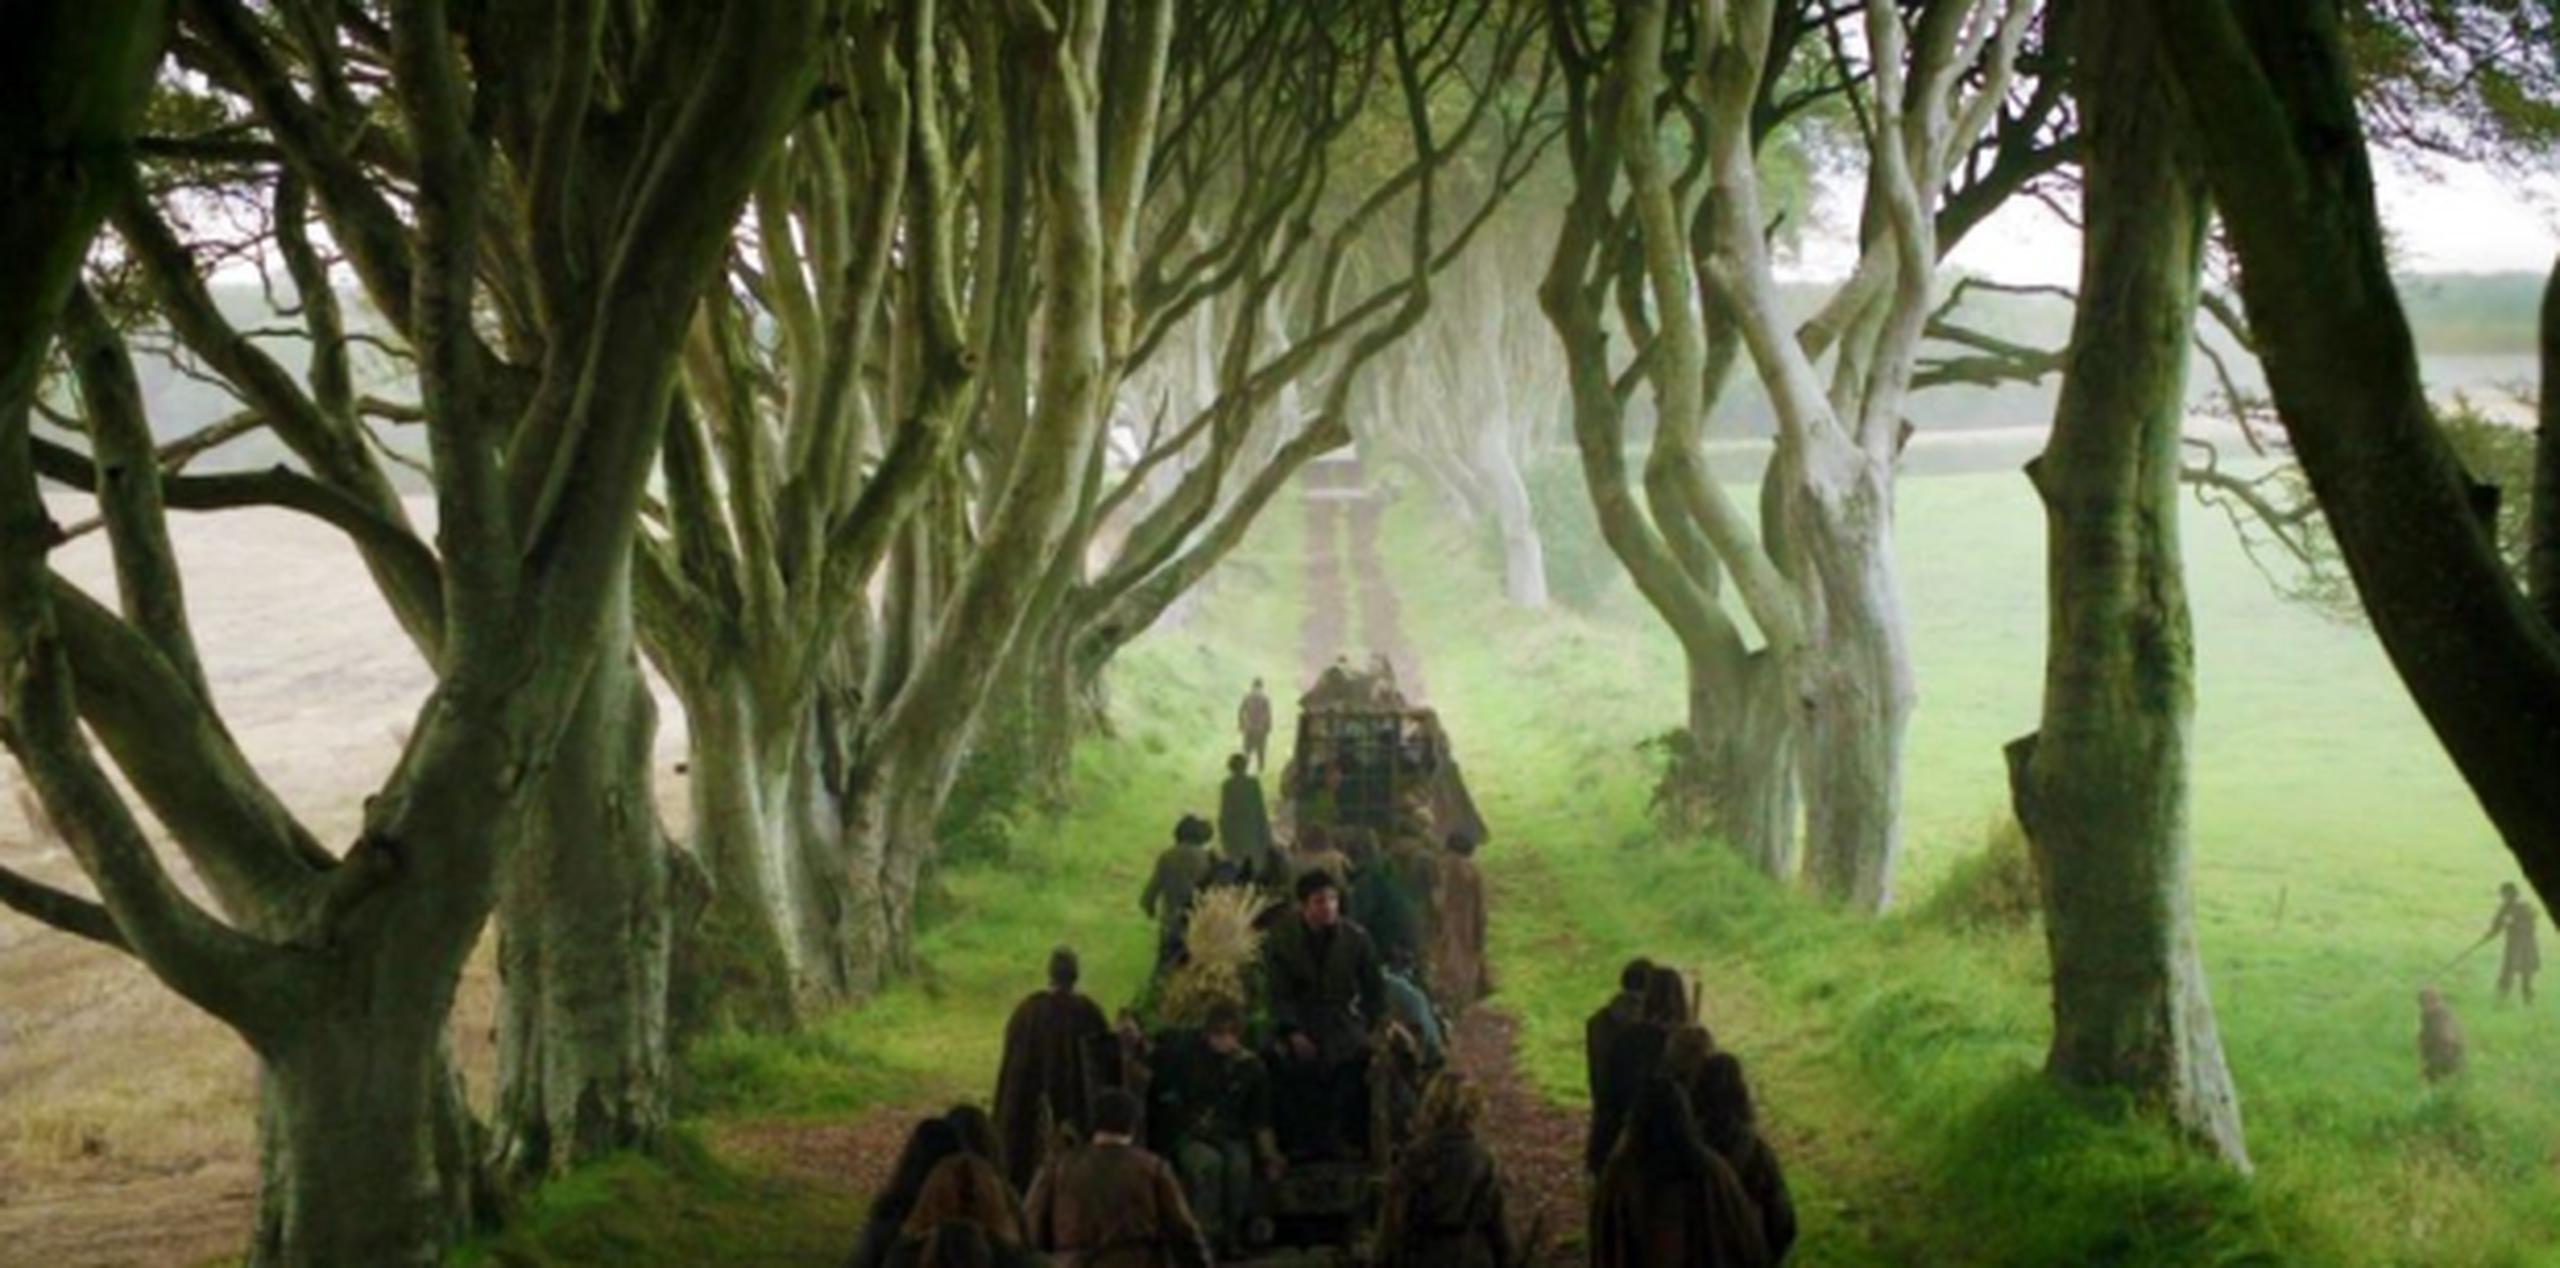 Gracias a "Game of Thrones", este y otros paisajes naturales en Irlanda del Norte han propiciado un repunte del turismo en la región.